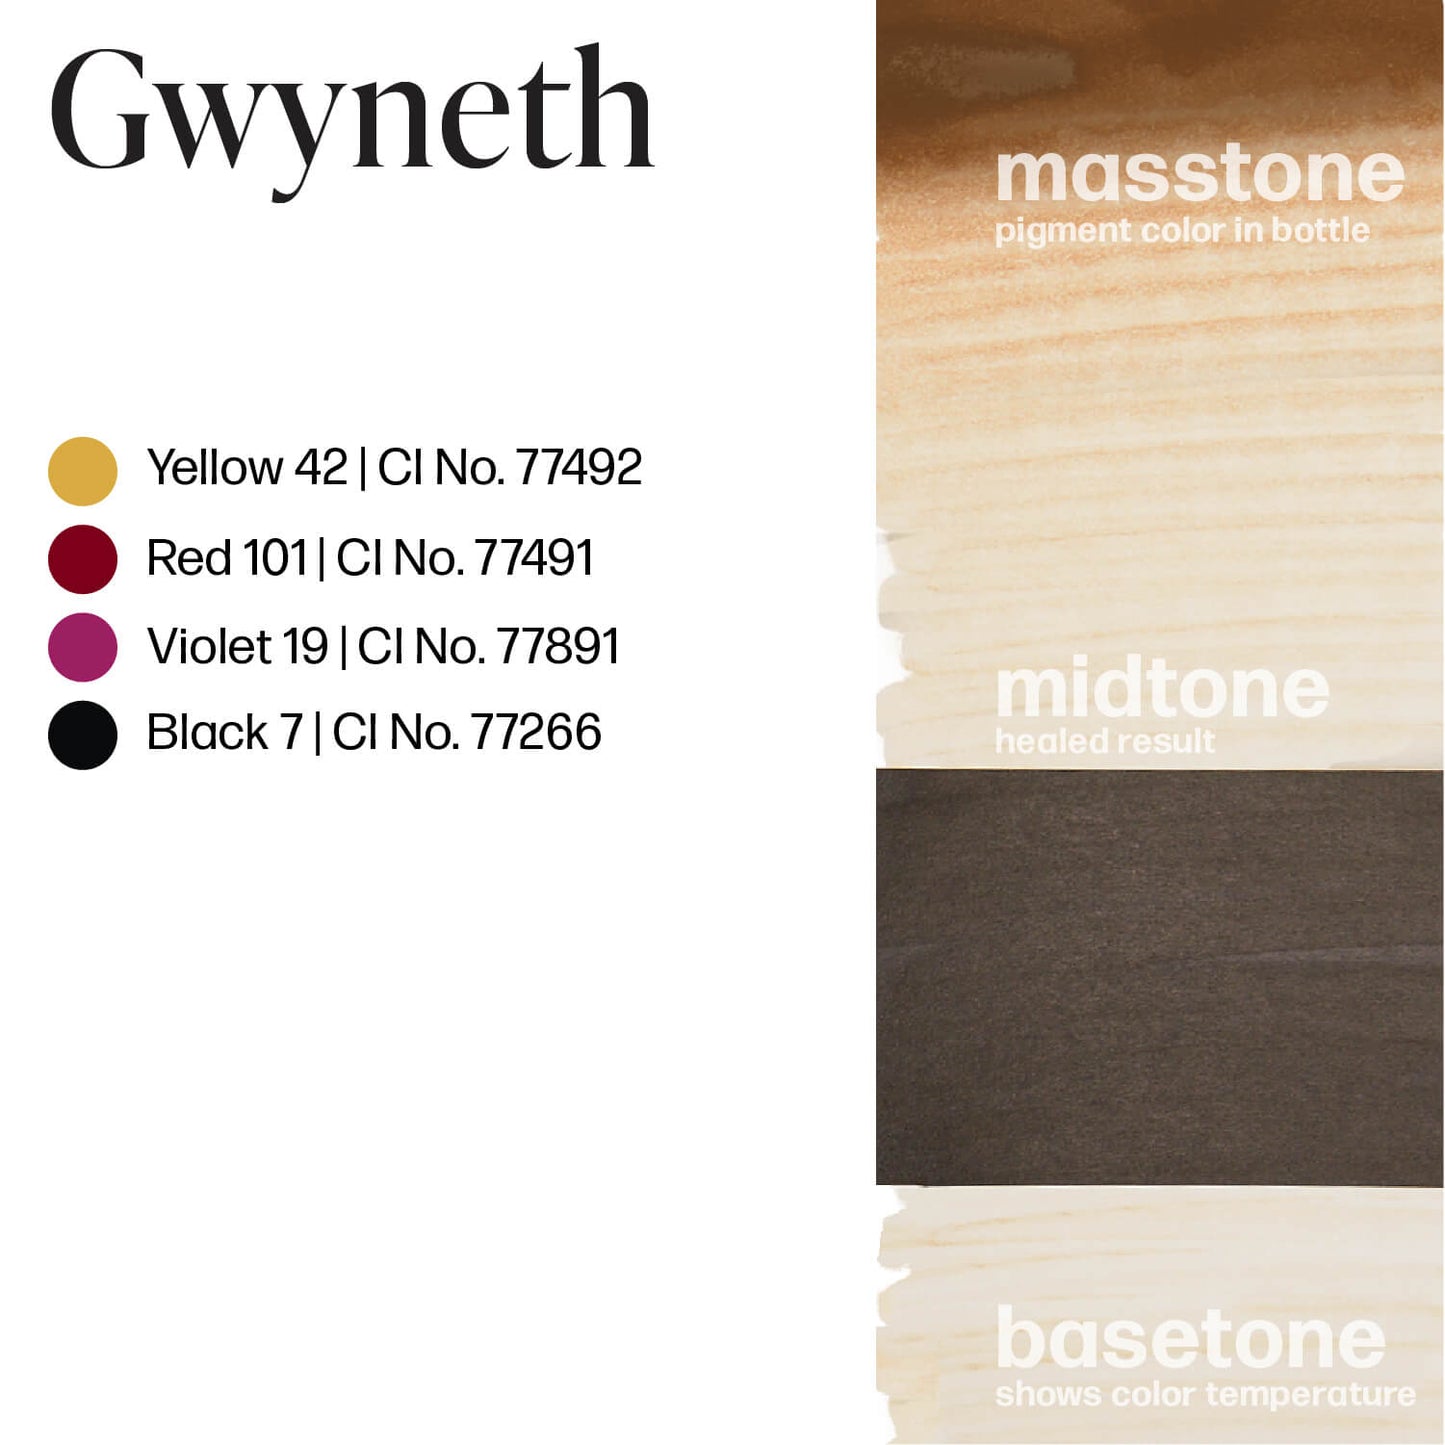 Perma Blend Gwyneth Gwenyth Brow Ink Drawdown Masstone Midtone Basetone